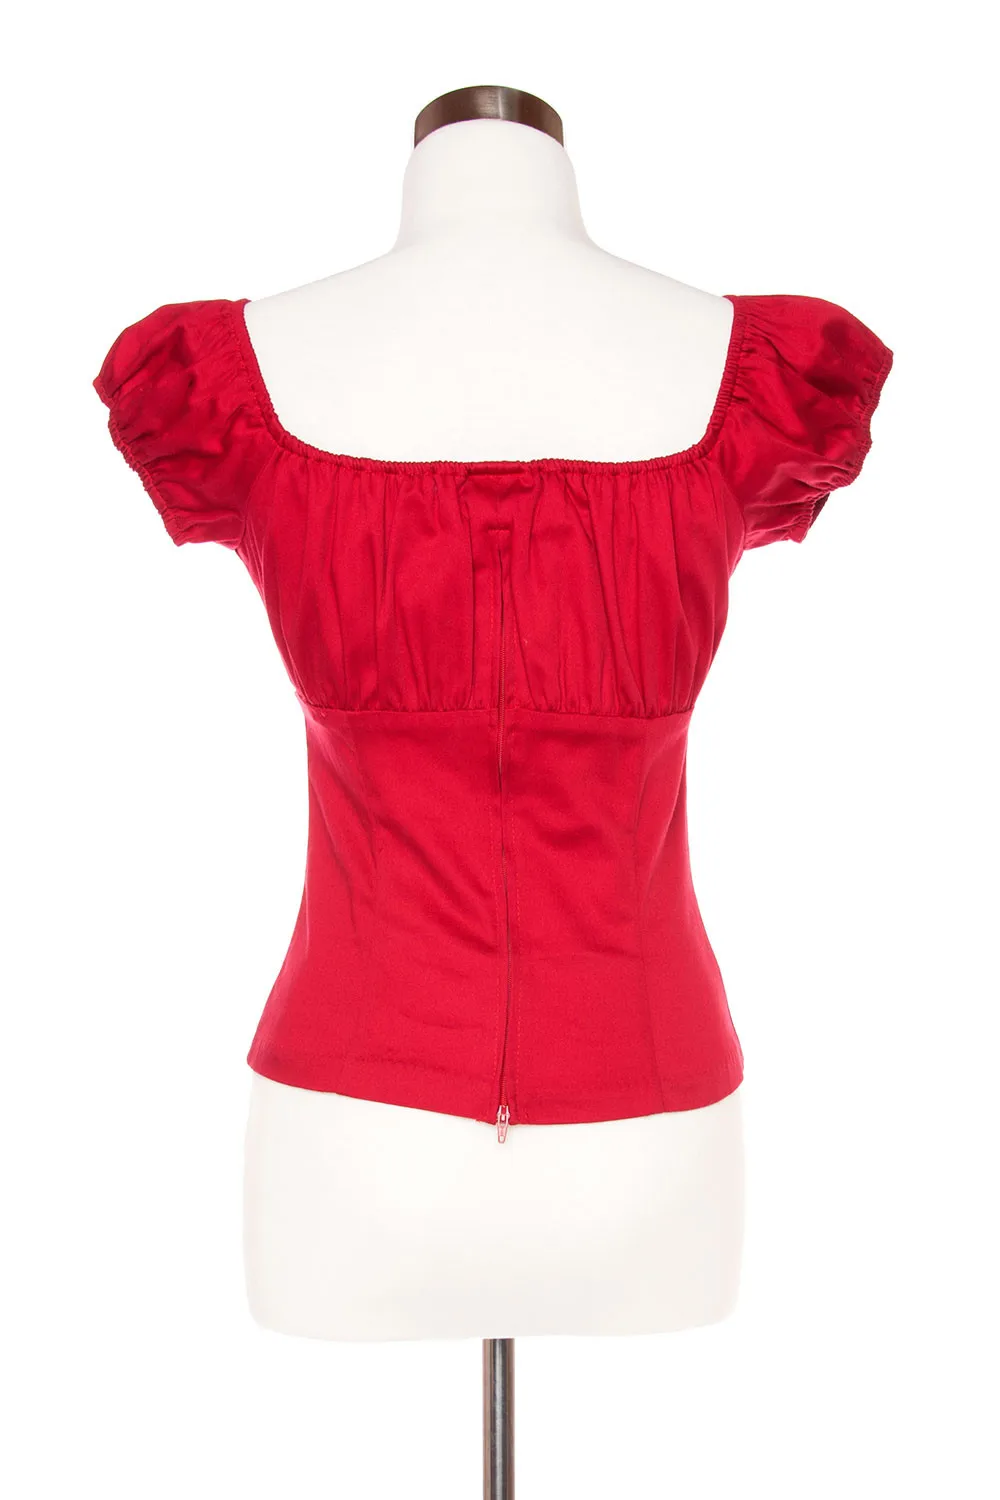 30-летние винтажные 50s pinup крестьянские топы с открытыми плечами с вырезом лодочкой, укороченные красные, большие размеры, женская одежда в стиле рок, футболка